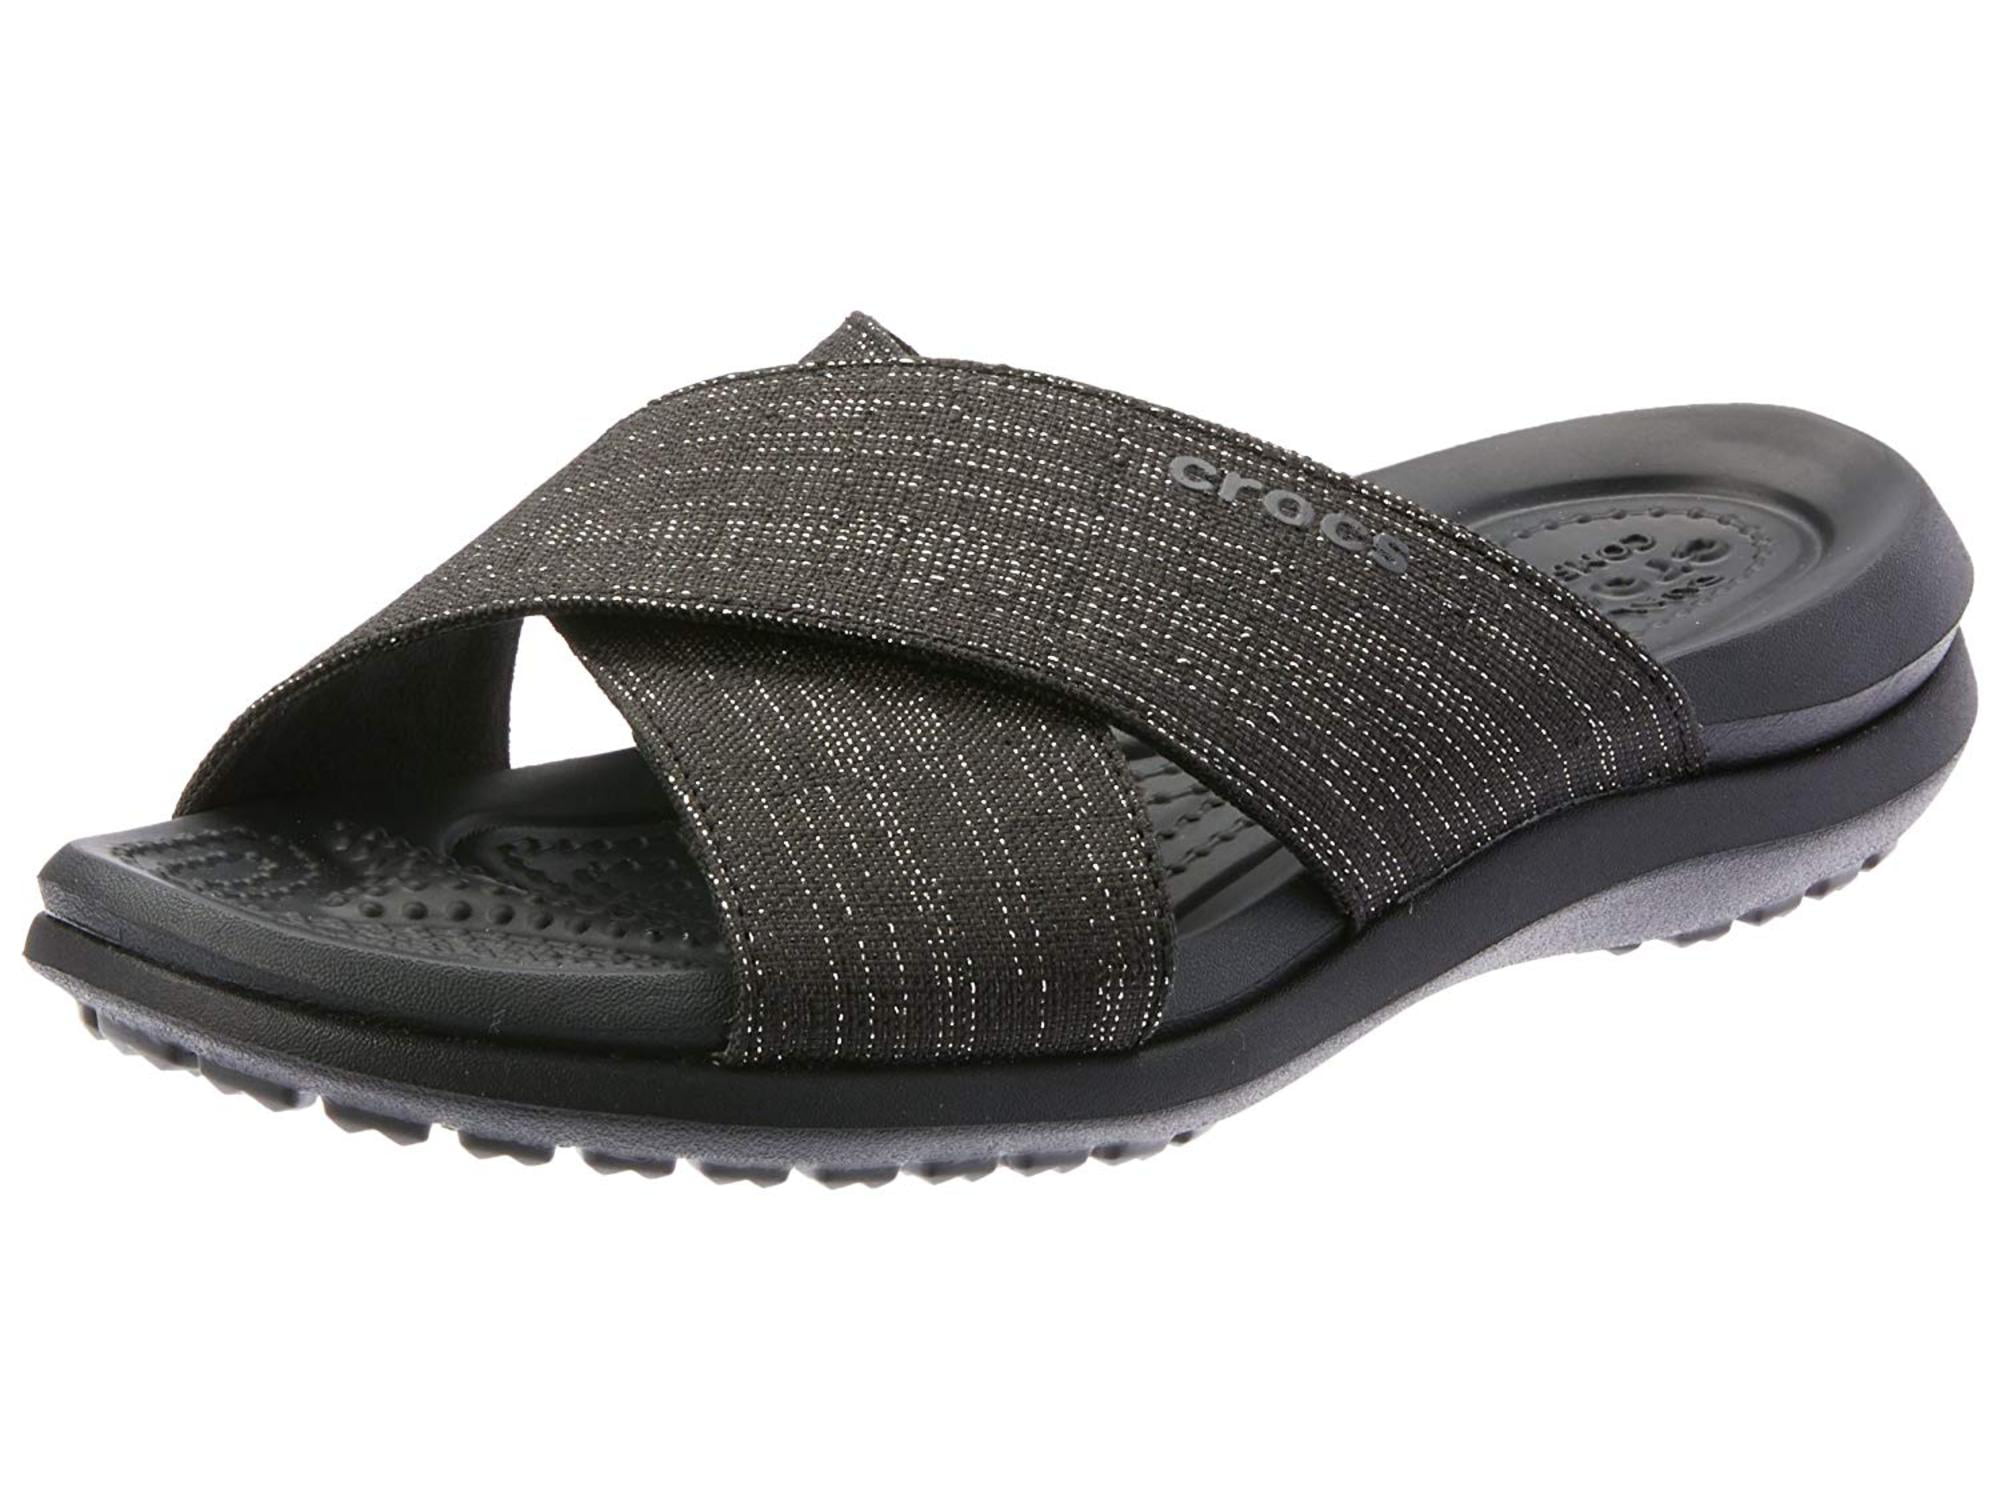 crocs women's sandals